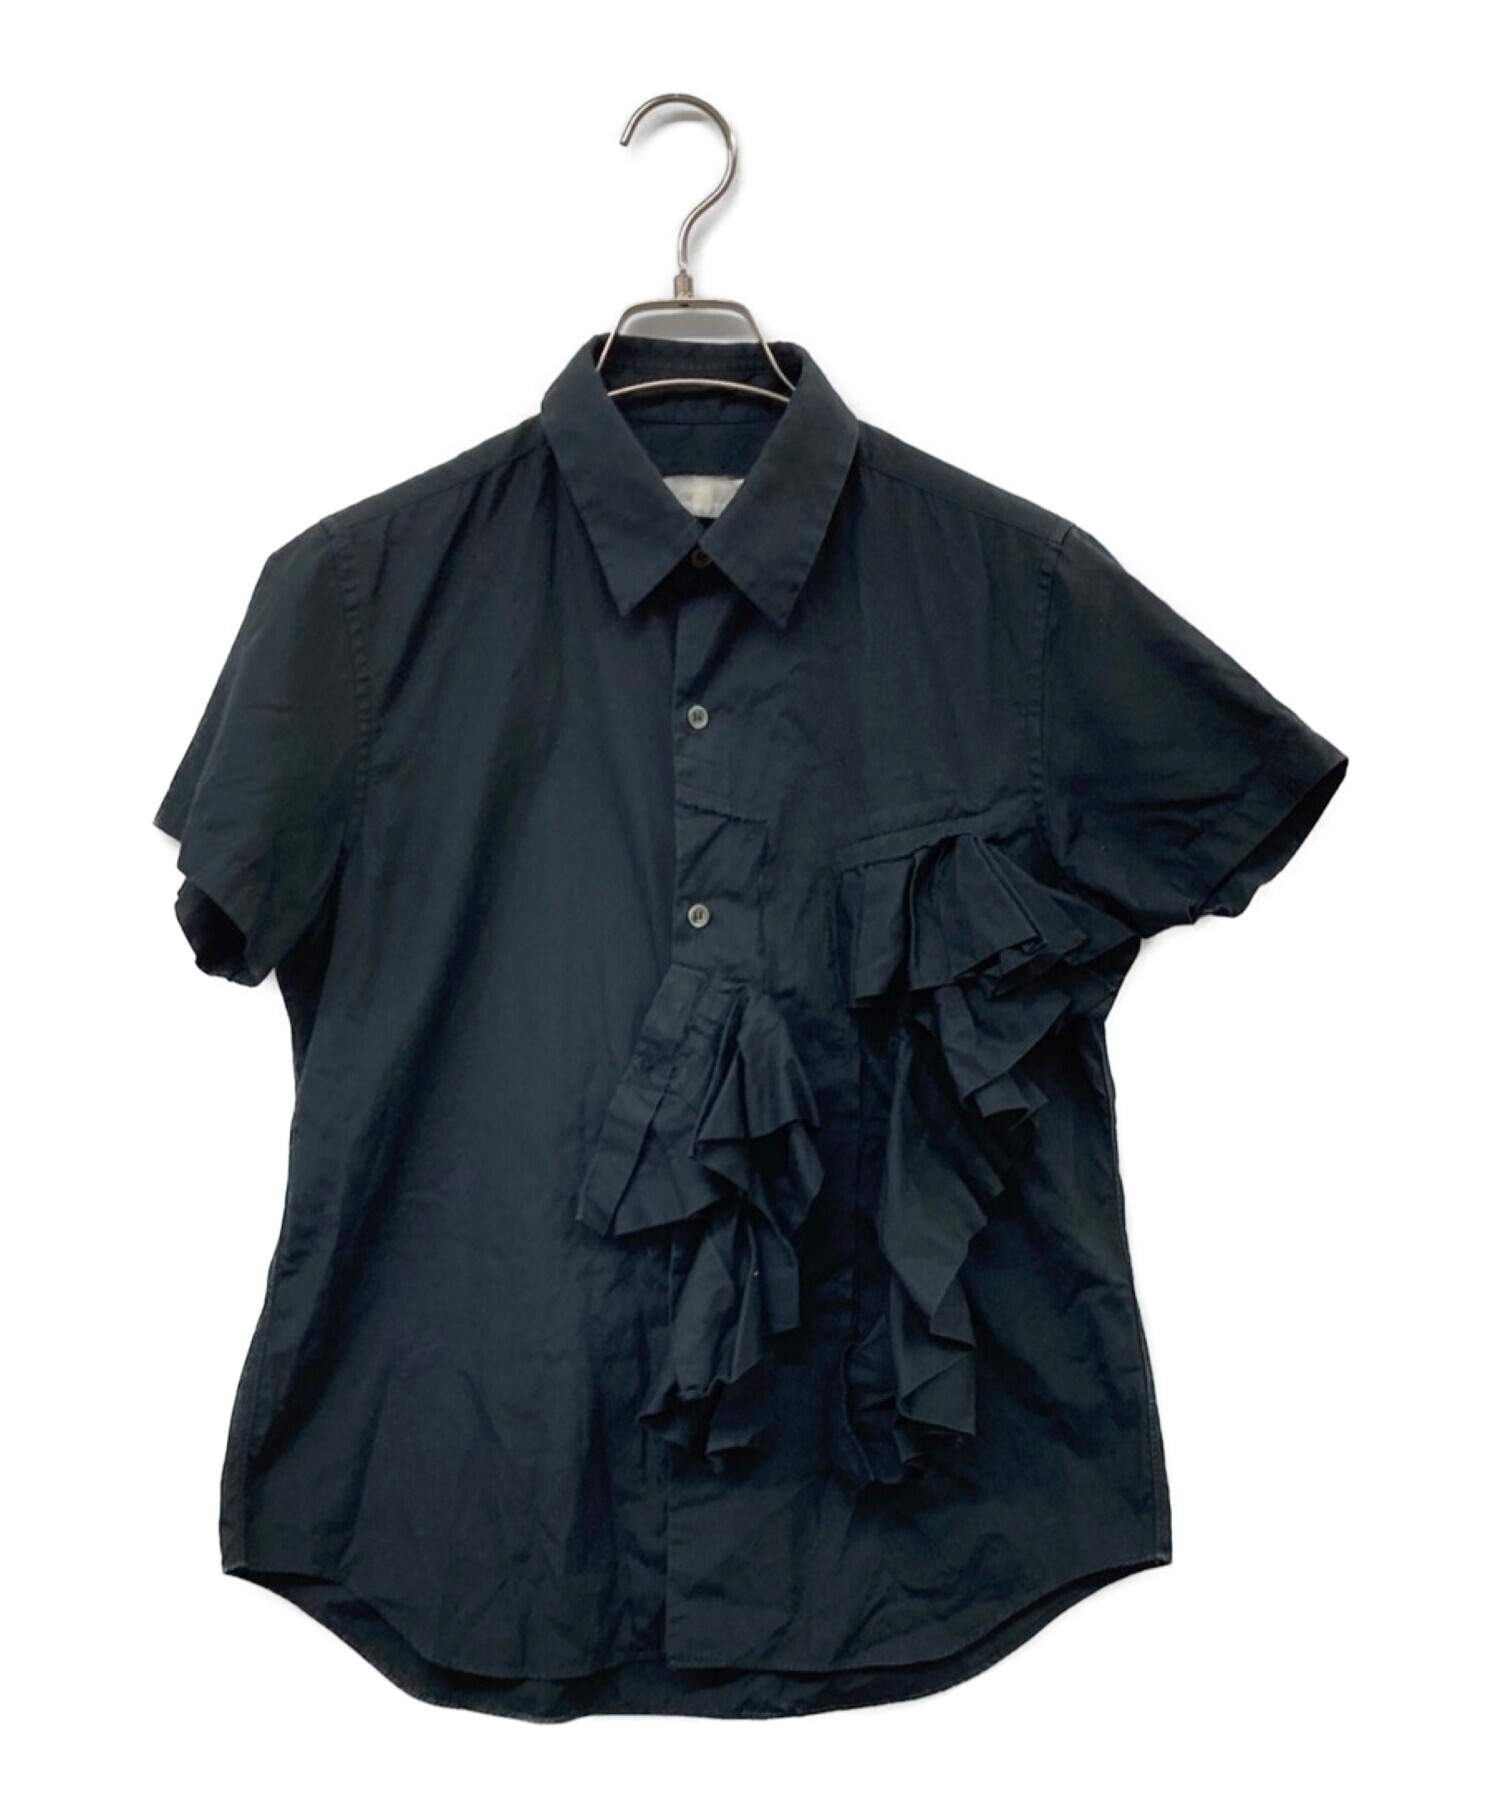 ❐商品説明❐コムデギャルソン フリルテープ袖装飾 シースルーシャツ 丸襟  黒 S